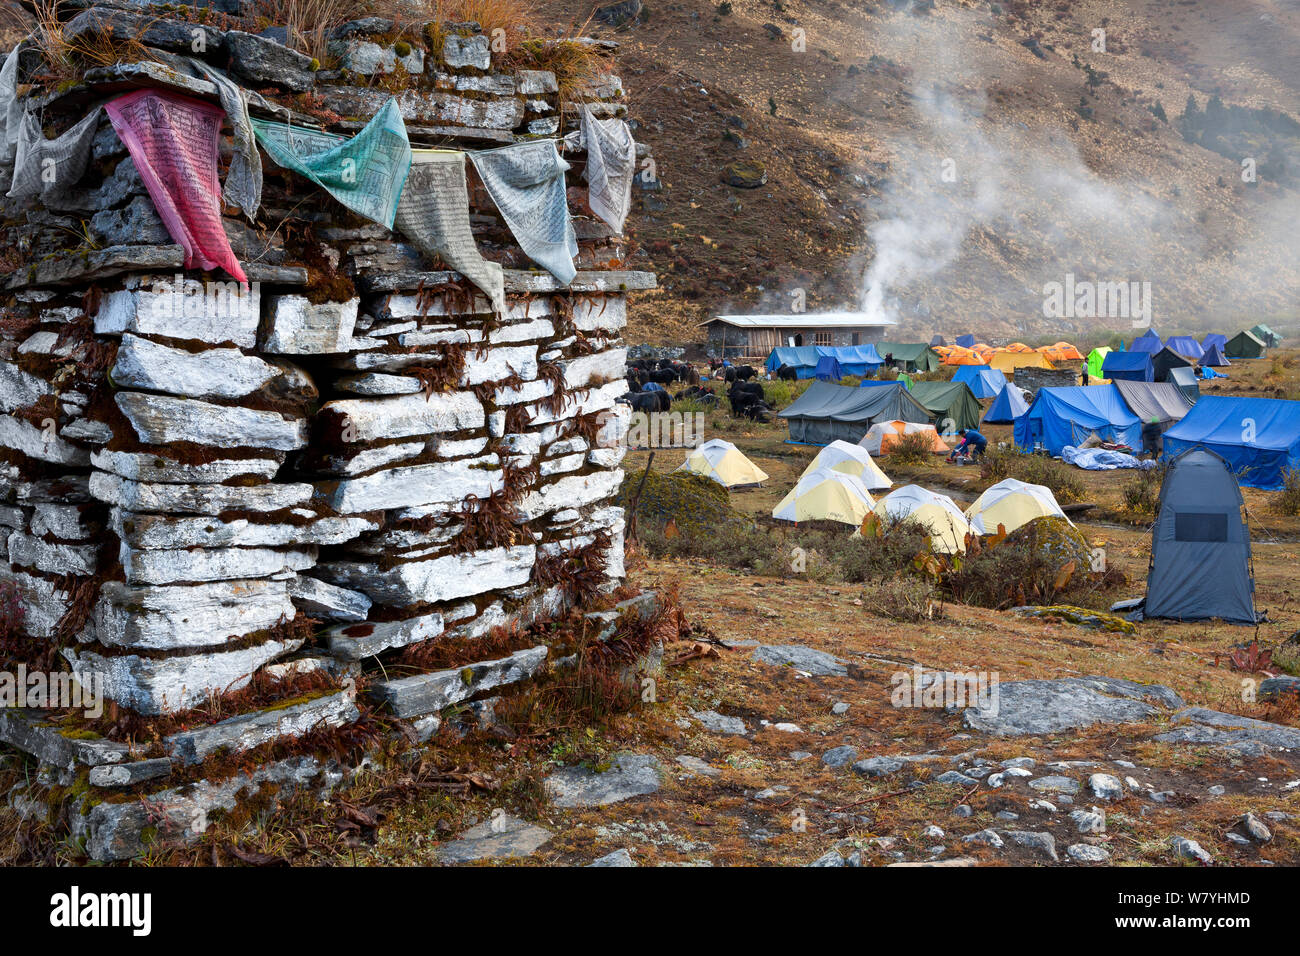 Mur de Mani ou chorten et Camp Jangothang Trek sur le Jhomolhari. Le Bhoutan, octobre 2014. Banque D'Images